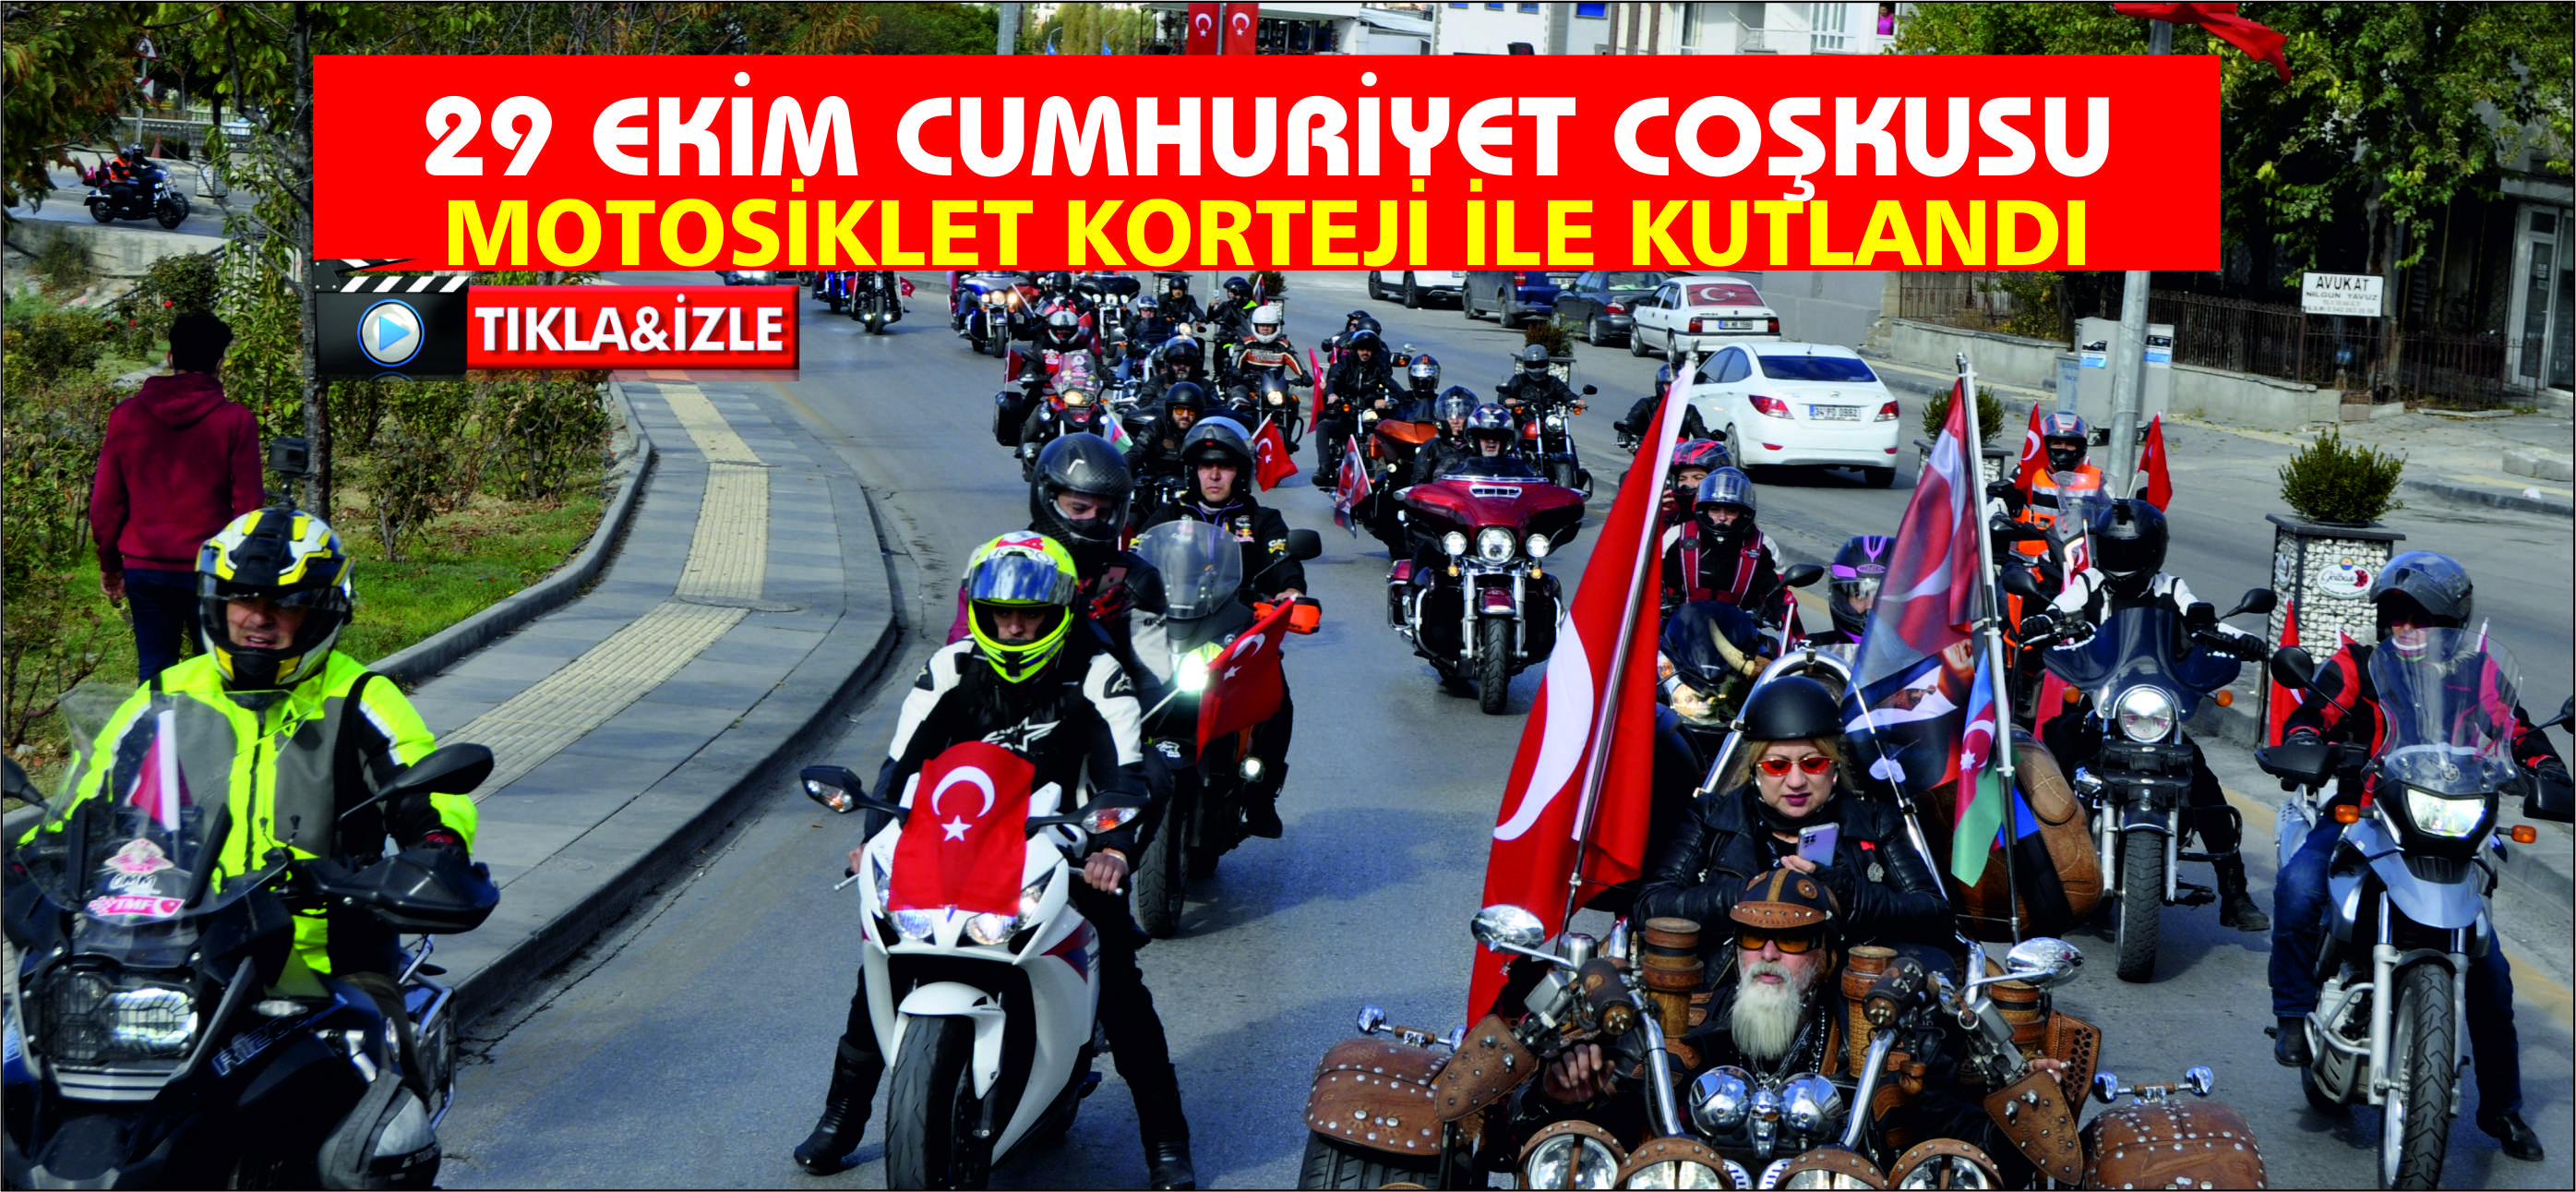 29 Ekim Cumhuriyet Coşkusu motosikletlerle kutlandı